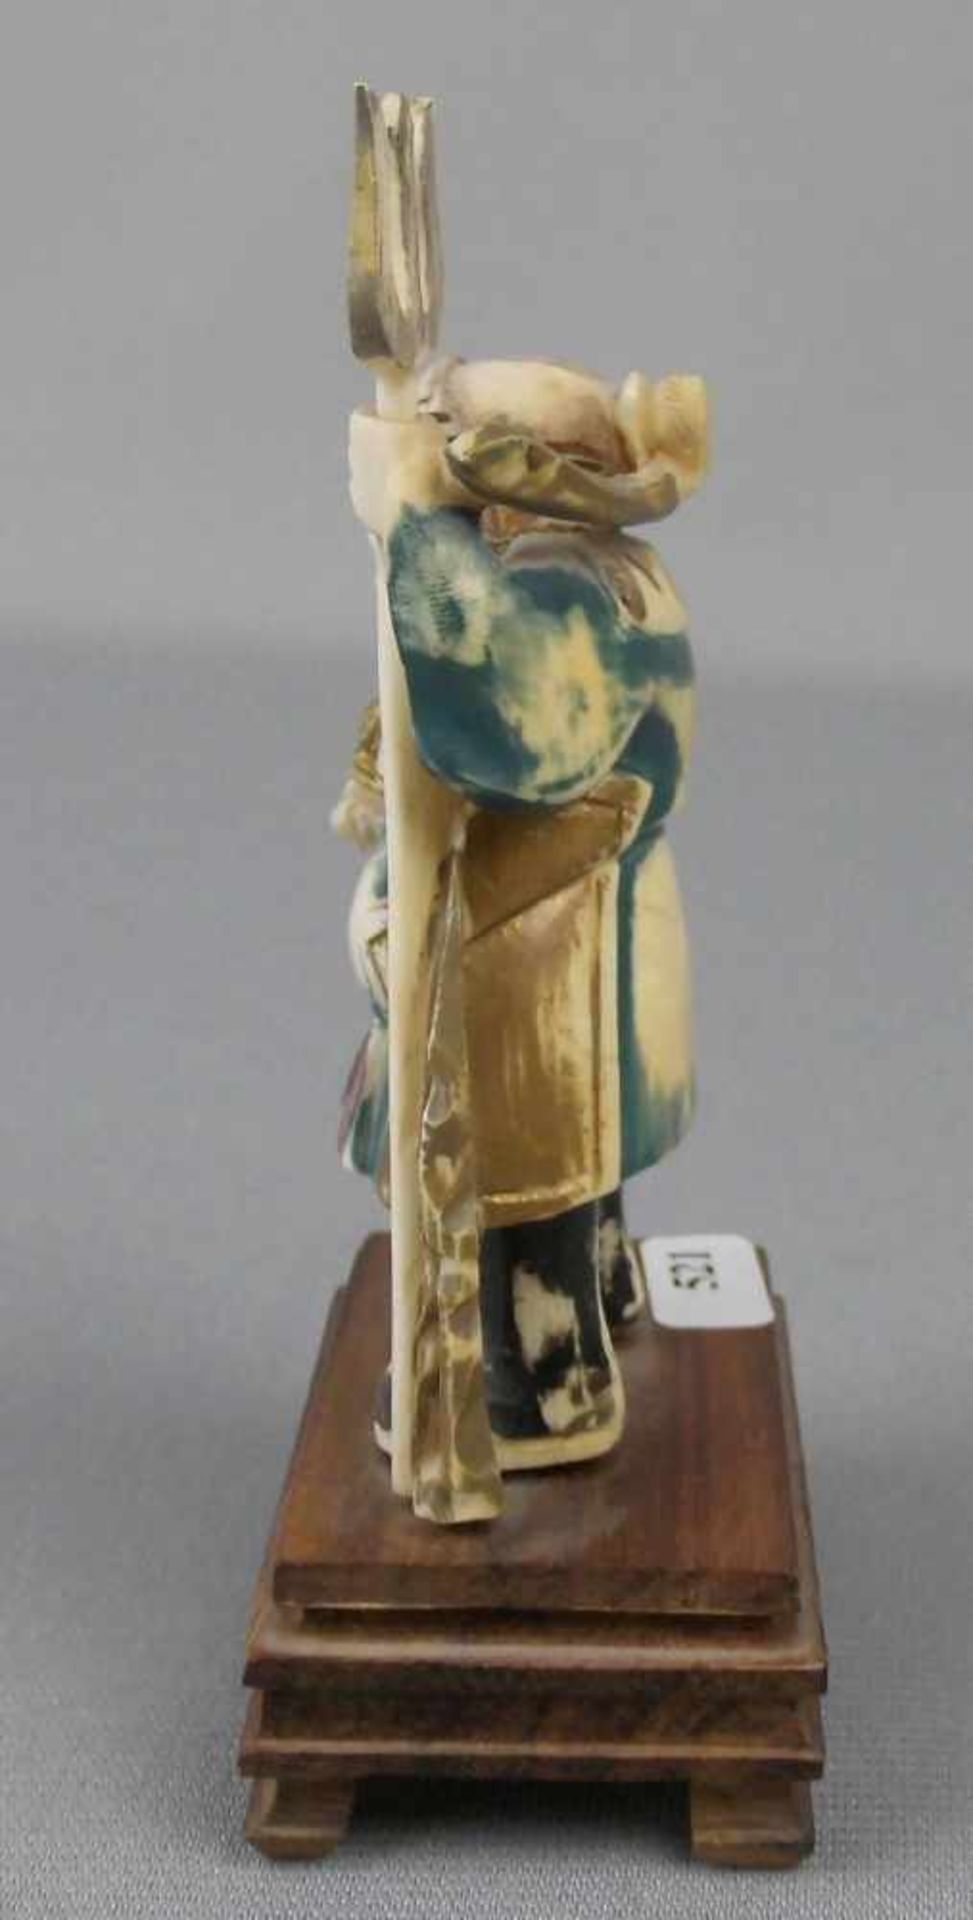 4 OKIMONO / ELFENBEINFIGUREN, Japan, Meiji-Periode, 19./20. Jh., Elfenbein und Holz, polychrom - Bild 2 aus 5